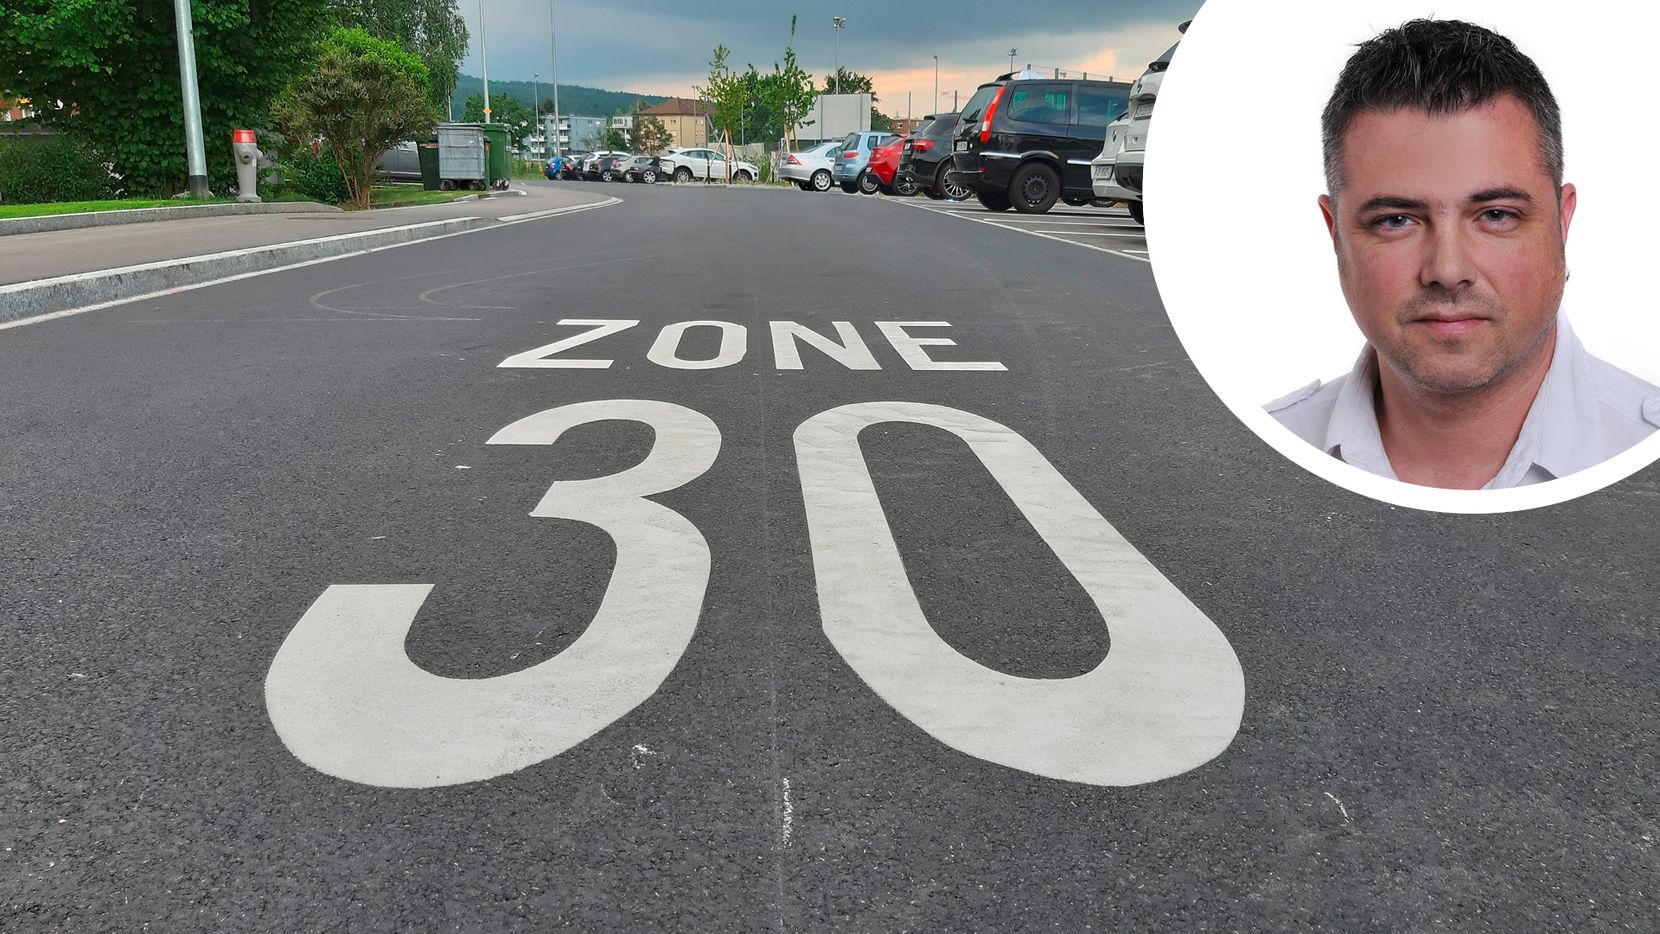 Bildkombo. Foto eines «Zone 30»- Aufdrucks auf der Strasse. Oben rechts ein Portrait von Thomas Bacher in einem weiss-umrandeten Kreis.